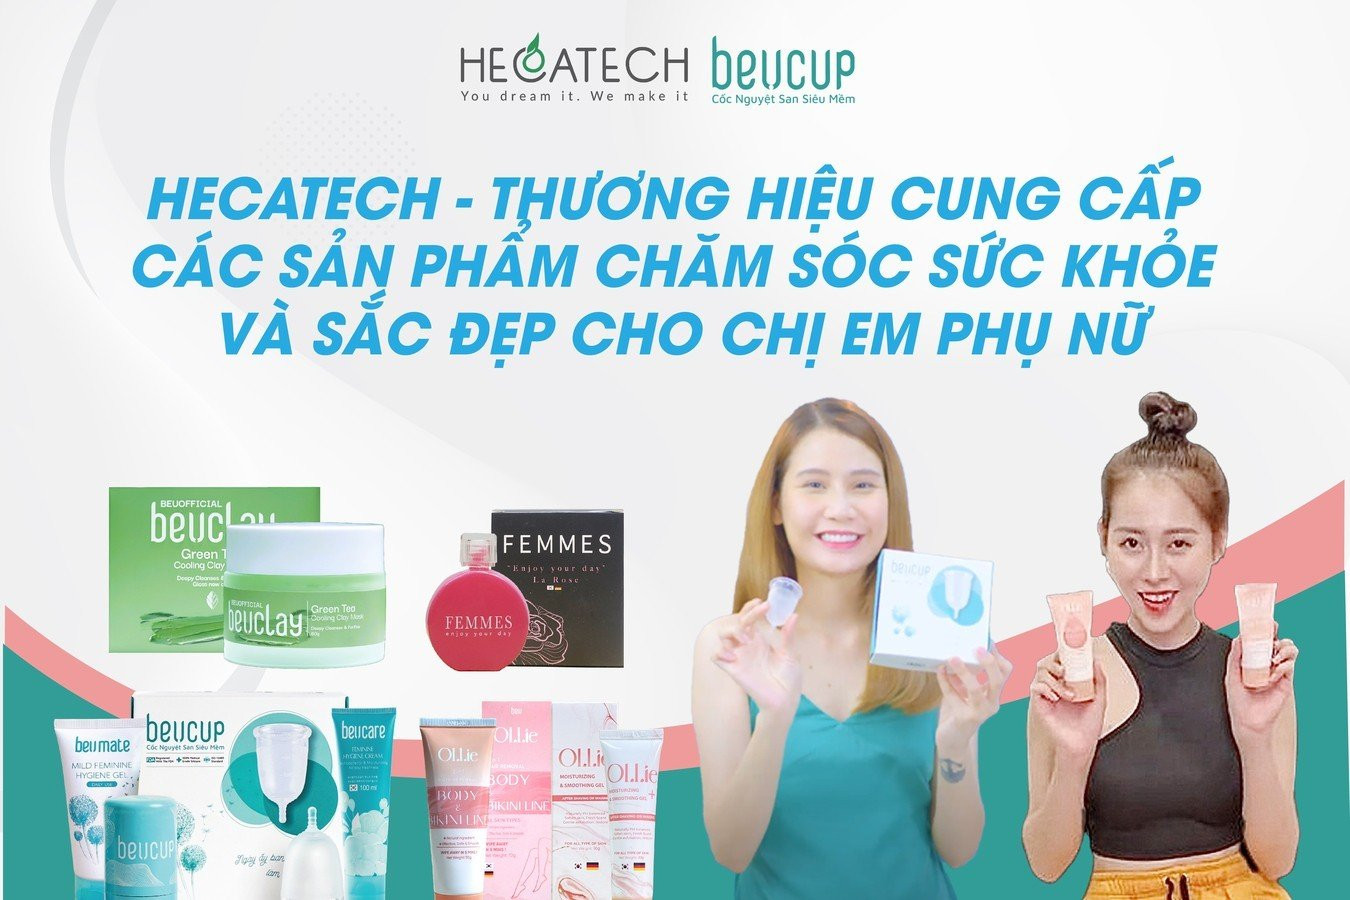 Hecatech ghi dấu ấn với loạt sản phẩm chăm sóc dành riêng phái đẹp